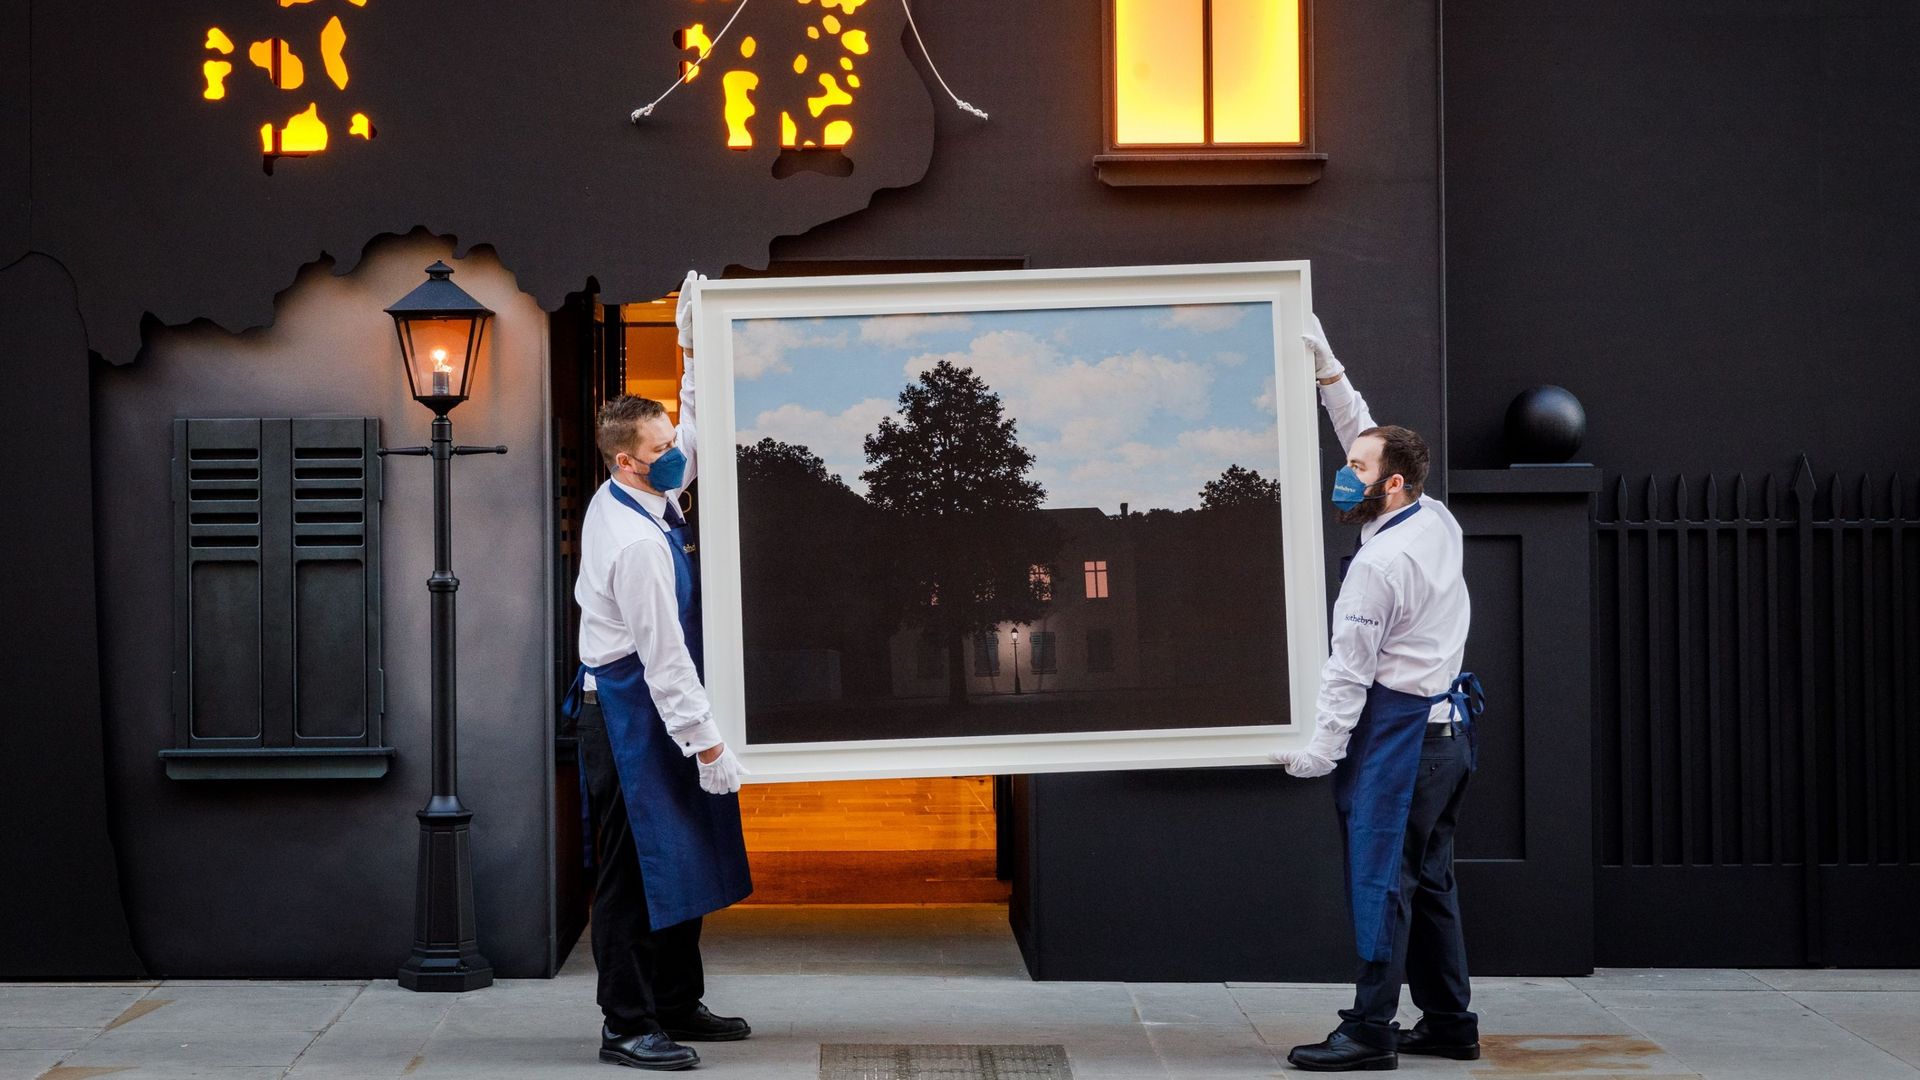 Du personne de Sotheby's tient le chef-d'œuvre de René Magritte, L'empire des lumières, devant l'entrée de la maison de vente aux enchères New Bond Street chez Sotheby's le 23 février 2022 à Londres, en Angleterre. Le tableau est en vente ce mercredi 2 ma